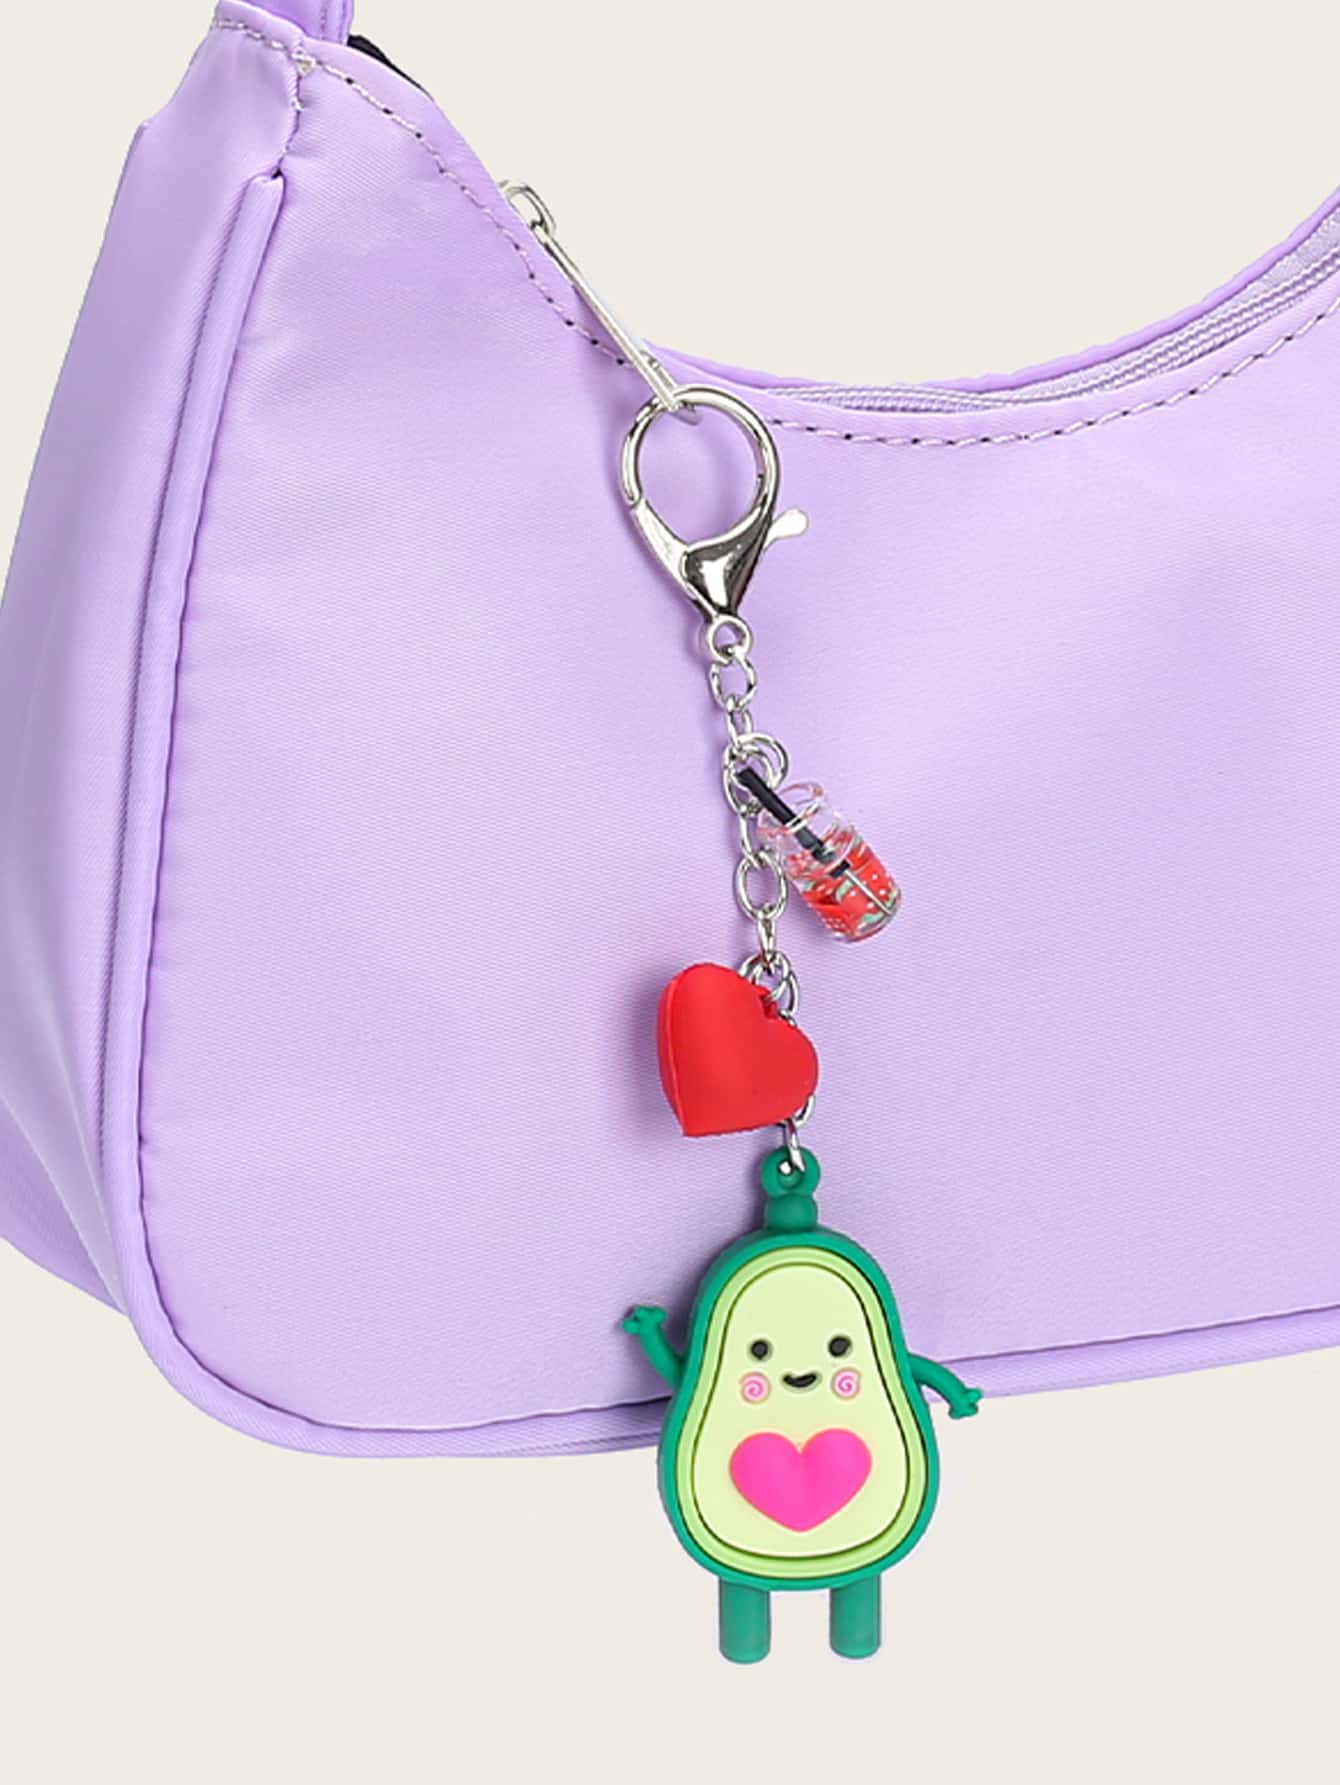 Avocado Design Bag Charm